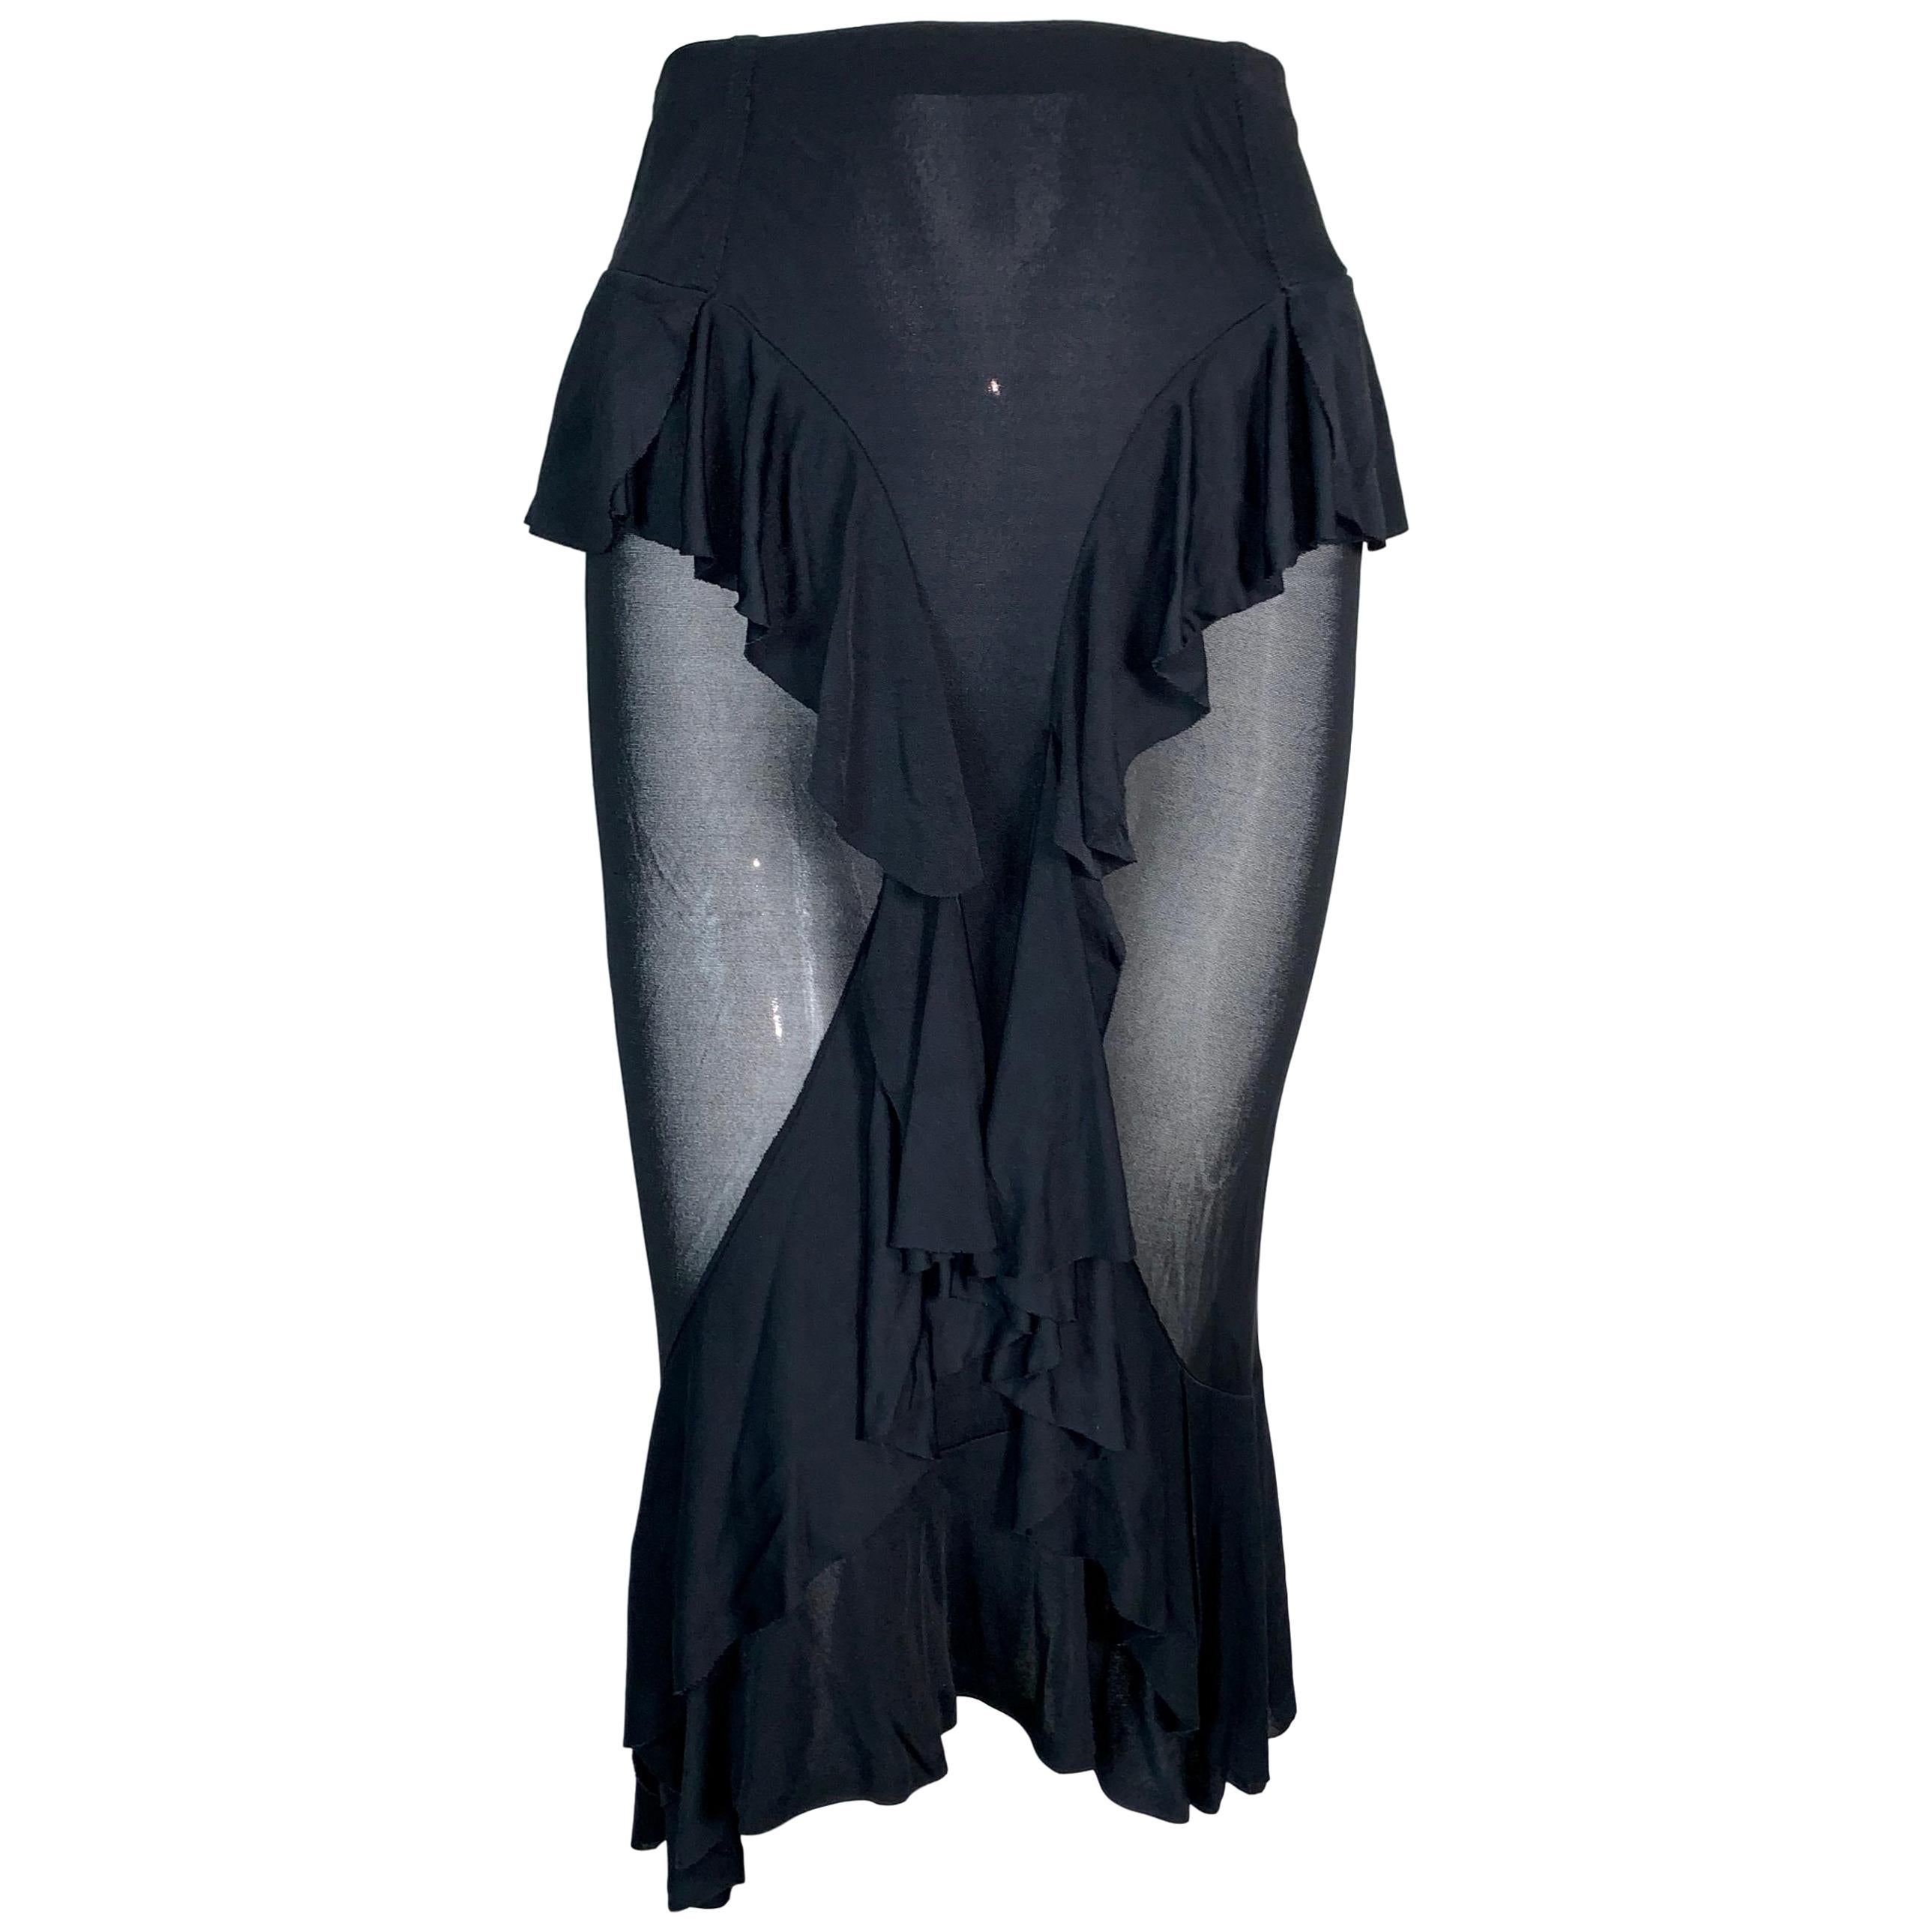 F/W 2003 Yves Saint Laurent by Tom Ford Sheer Black Ruffles Skirt